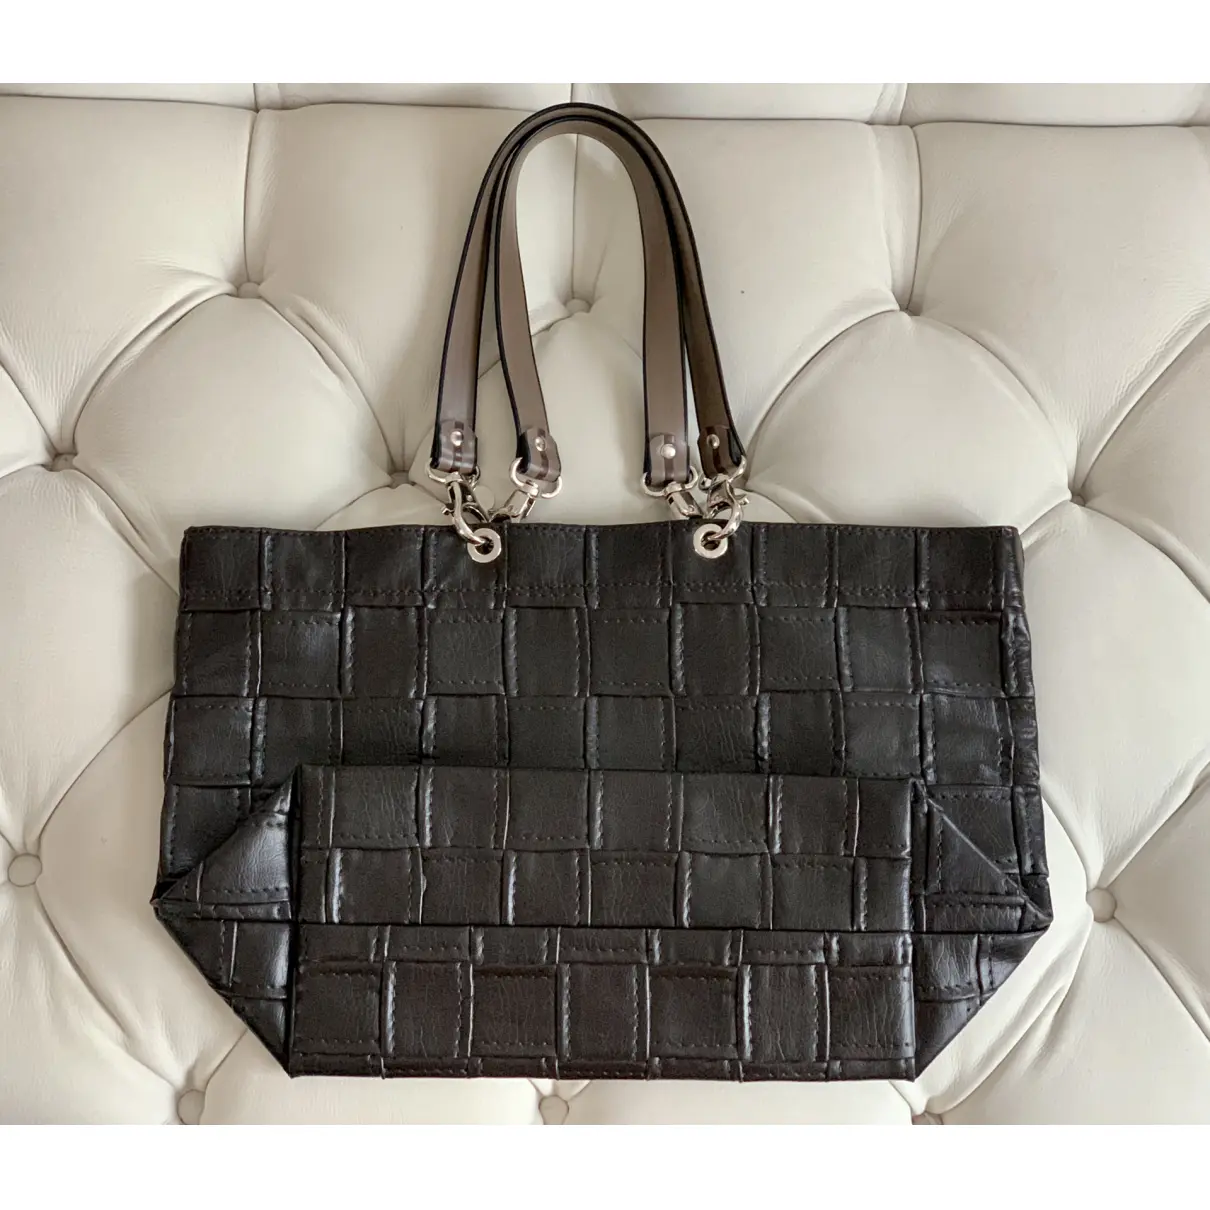 Buy François Rénier Patent leather handbag online